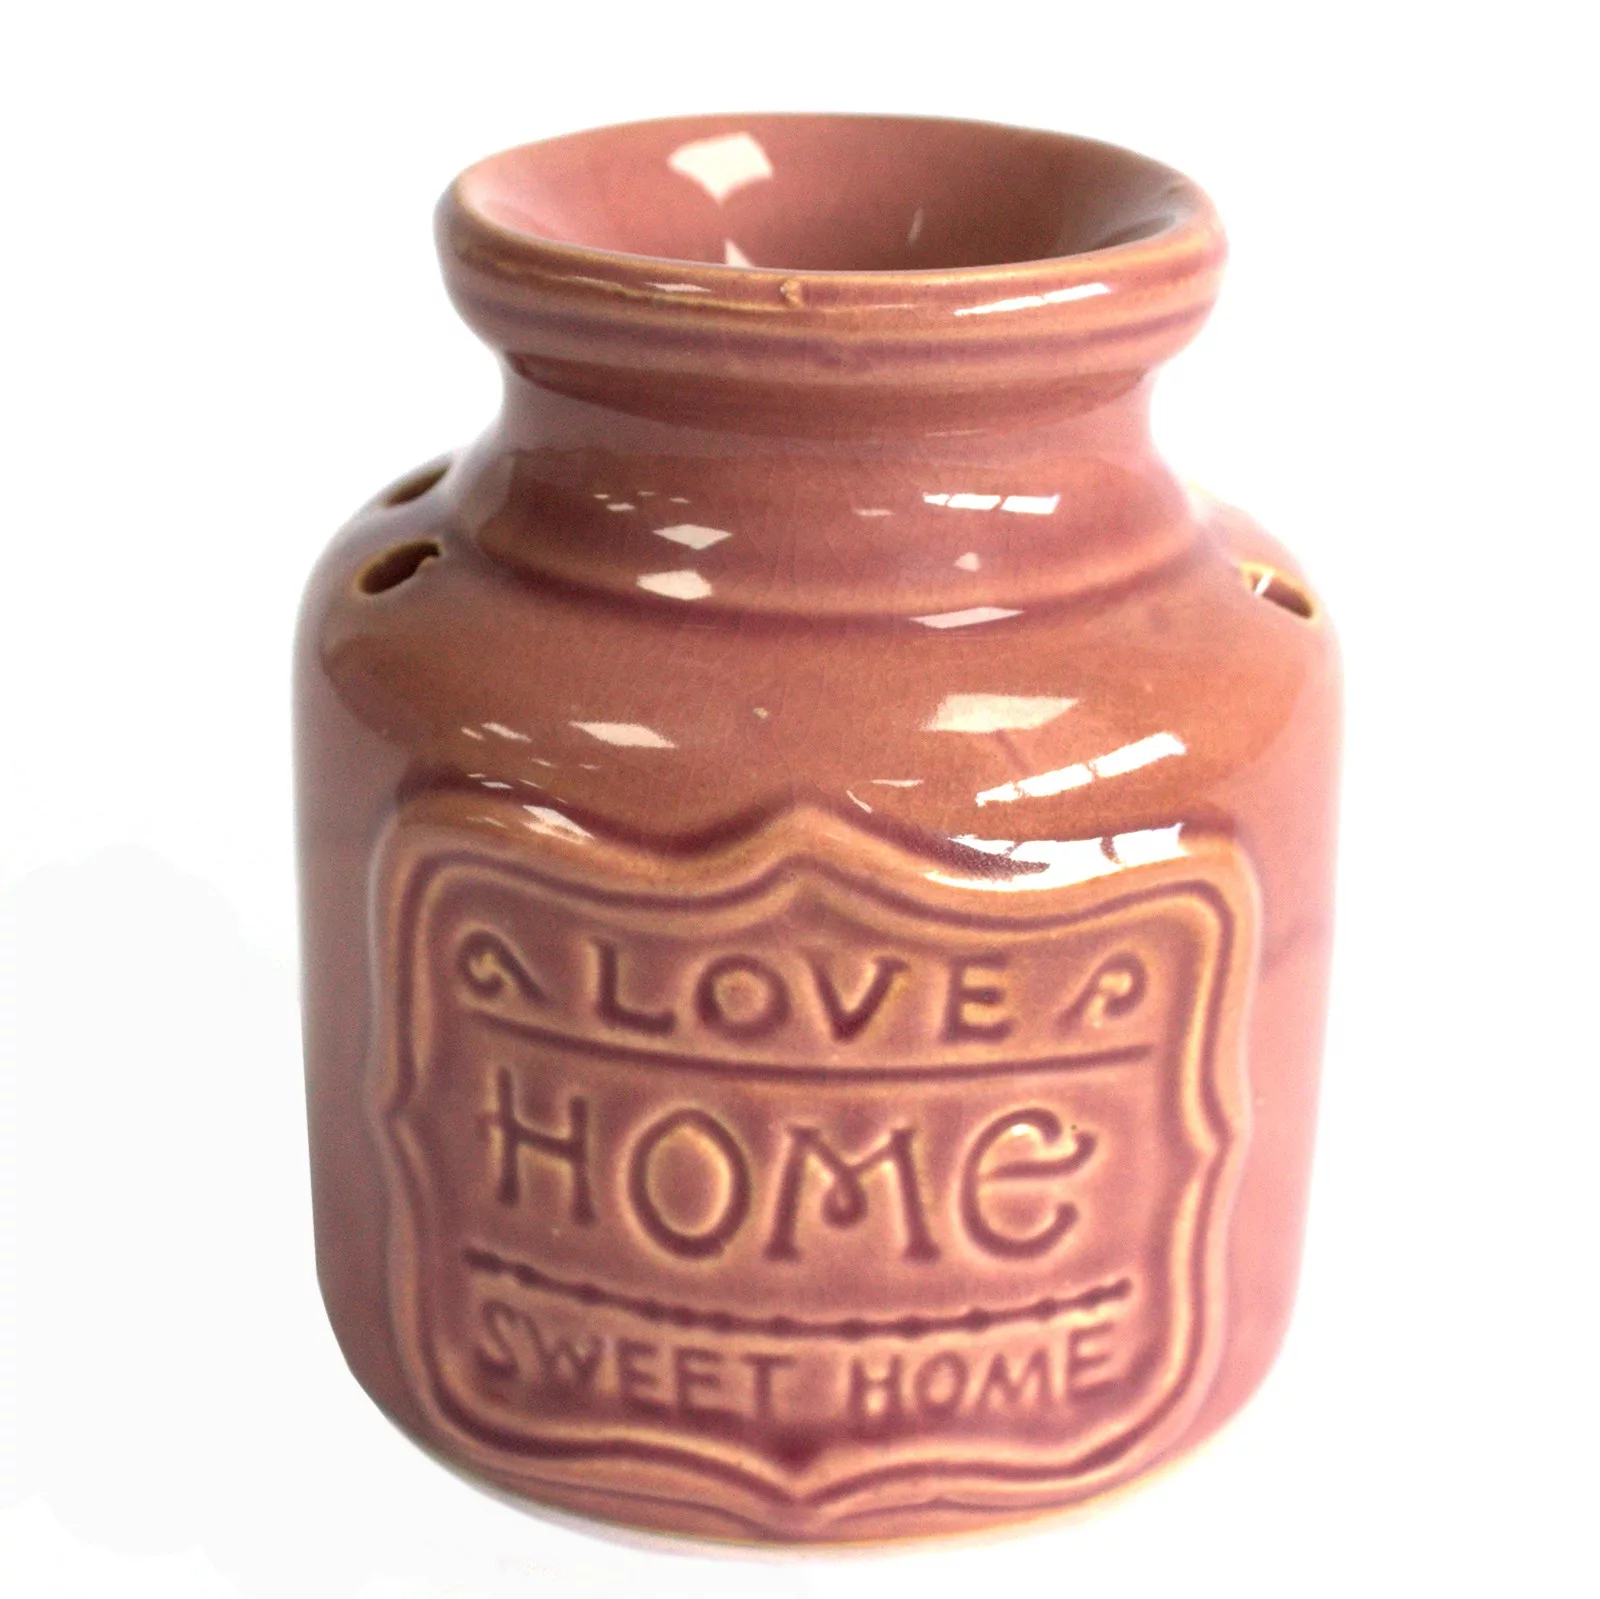 Lrg Home Oil Burner –  Love Home Sweet Home